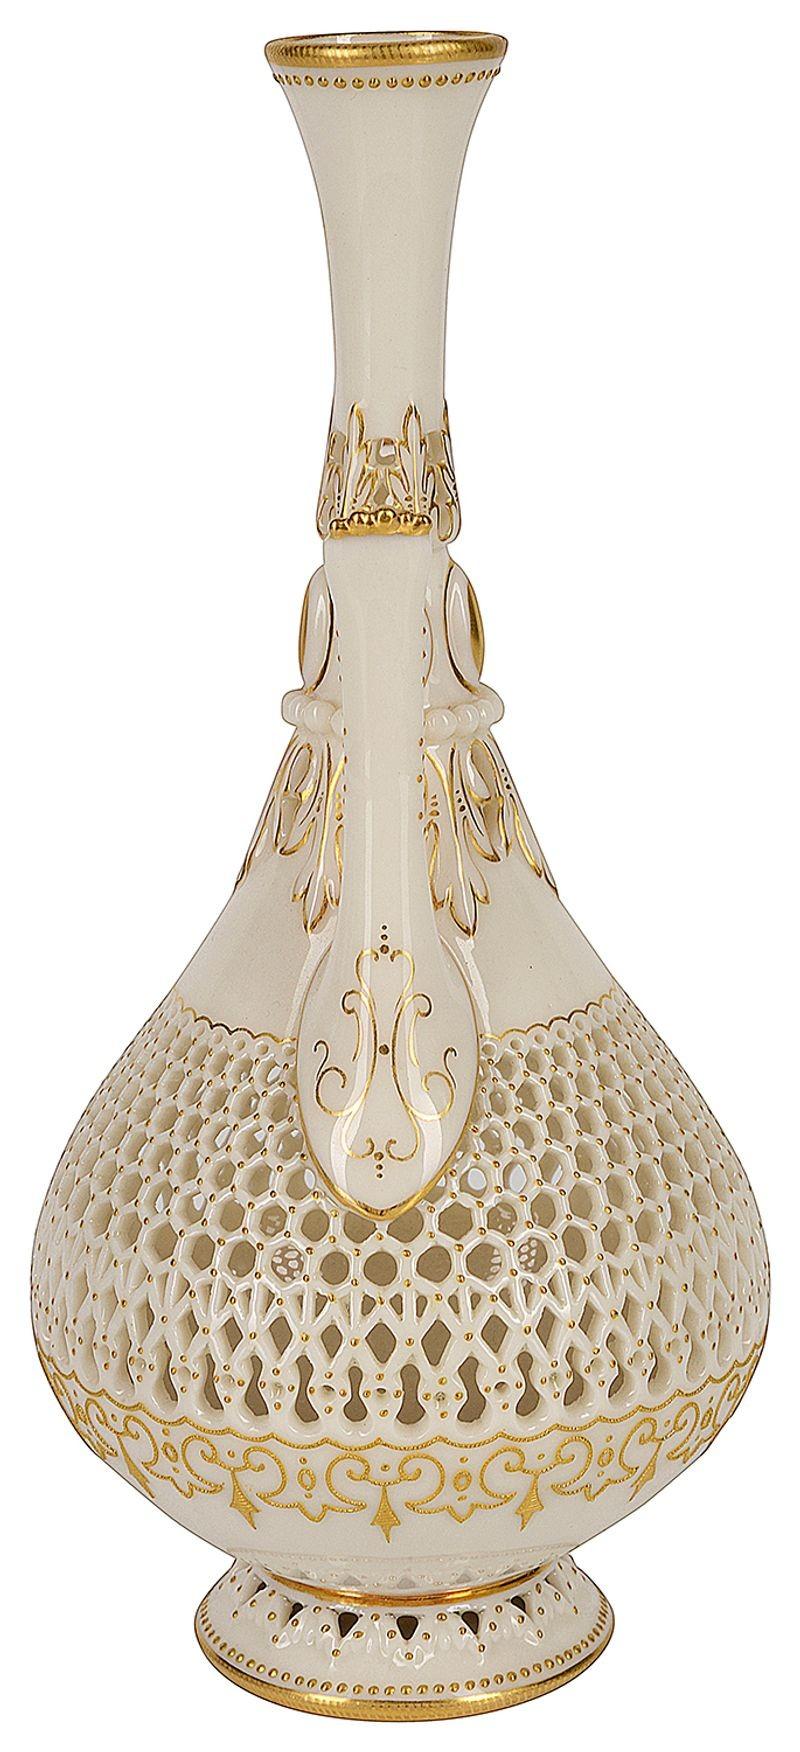 Vase à deux anses en porcelaine réticulée Royal Worcester de qualité supérieure, datant de la fin du XIXe siècle, à décor doré.
Signé à la base.

LES PORCELAINES PERCÉES DE GEORGE OWEN 
L'œuvre céramique du potier anglais George Owen (1845-1912),